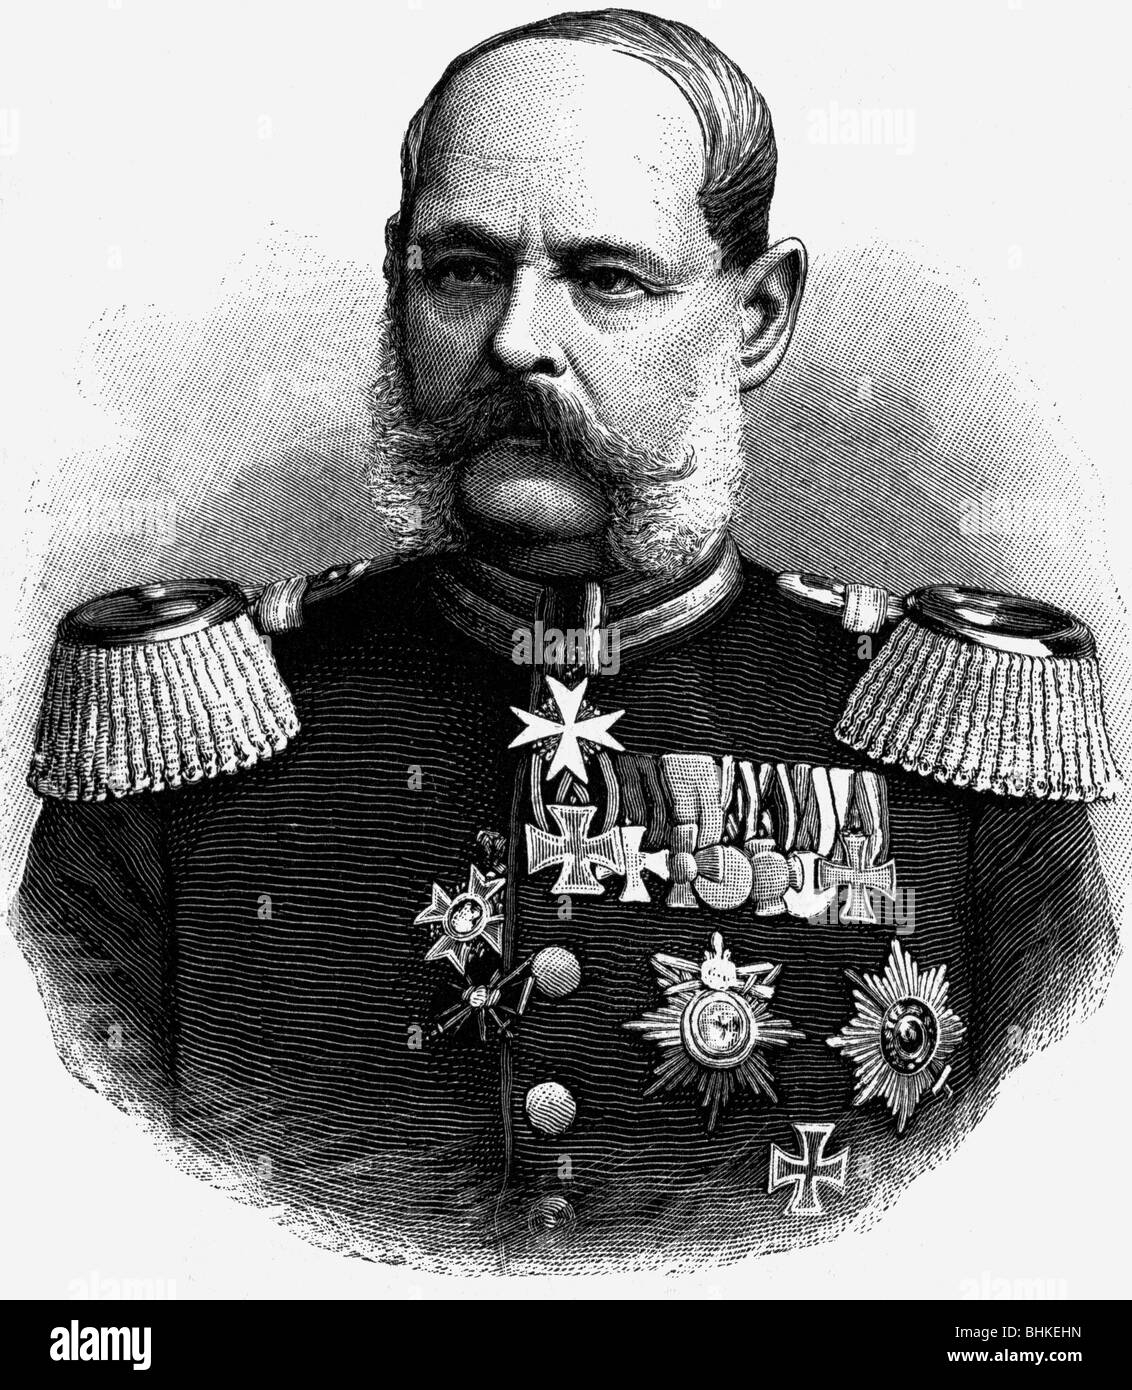 Pape, Alexander August von, 2.2.1813 - 7.5.1895, generale prussiano, comandante generale del corpo della Guardia Prussiana 1884 - 1888, ritratto, incisione in legno, circa 1885, , Foto Stock